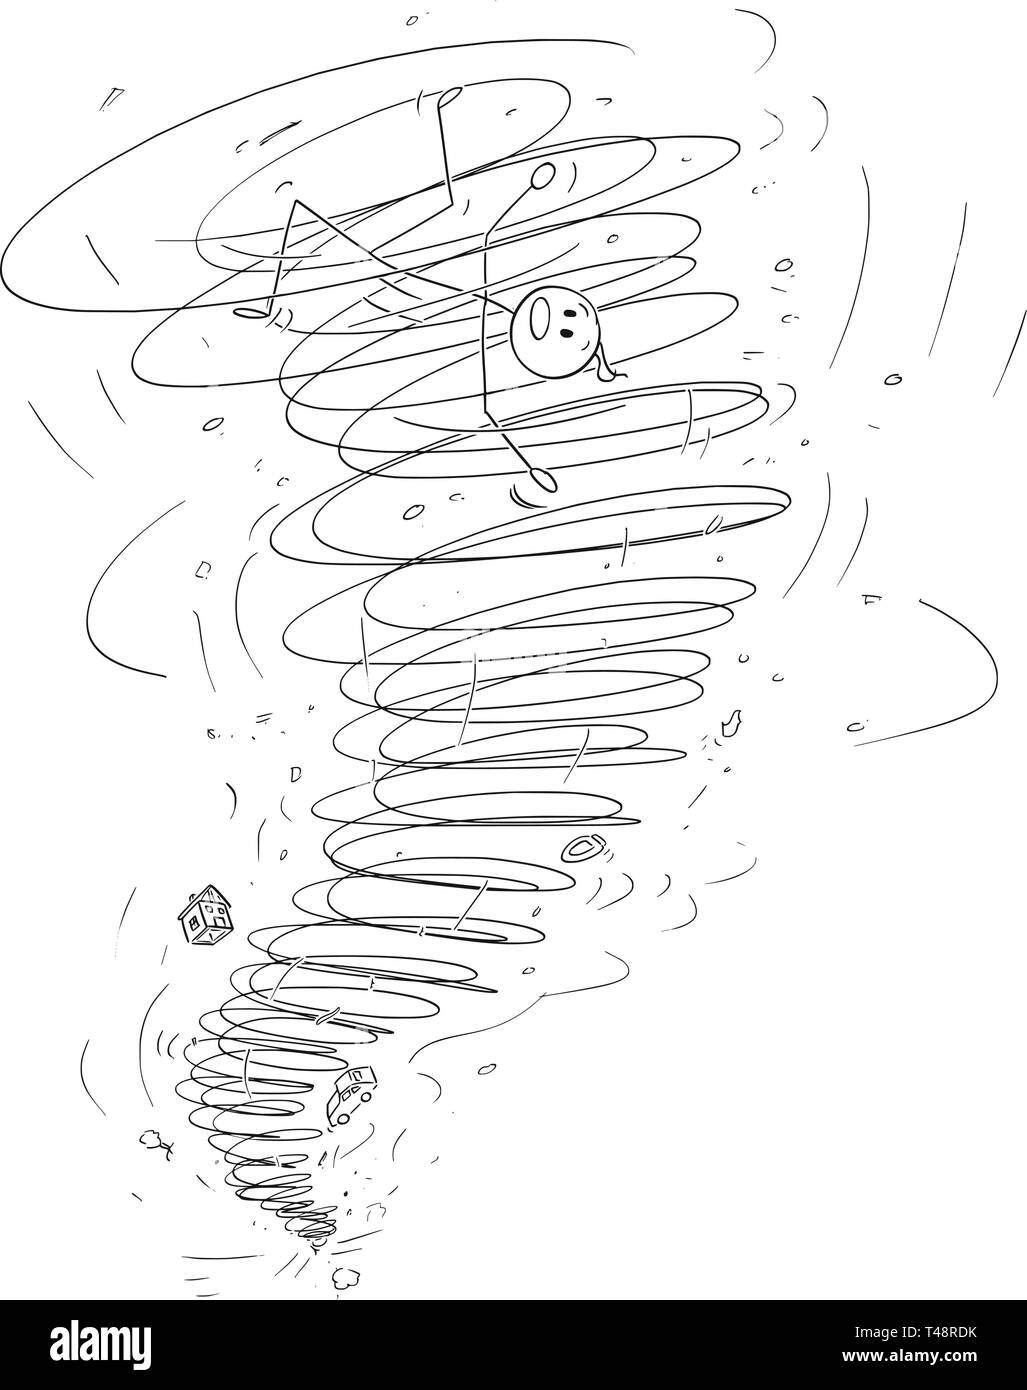 Cartoon stick figure dessin illustration conceptuelle de l'homme emporté par une tornade tempête. Illustration de Vecteur